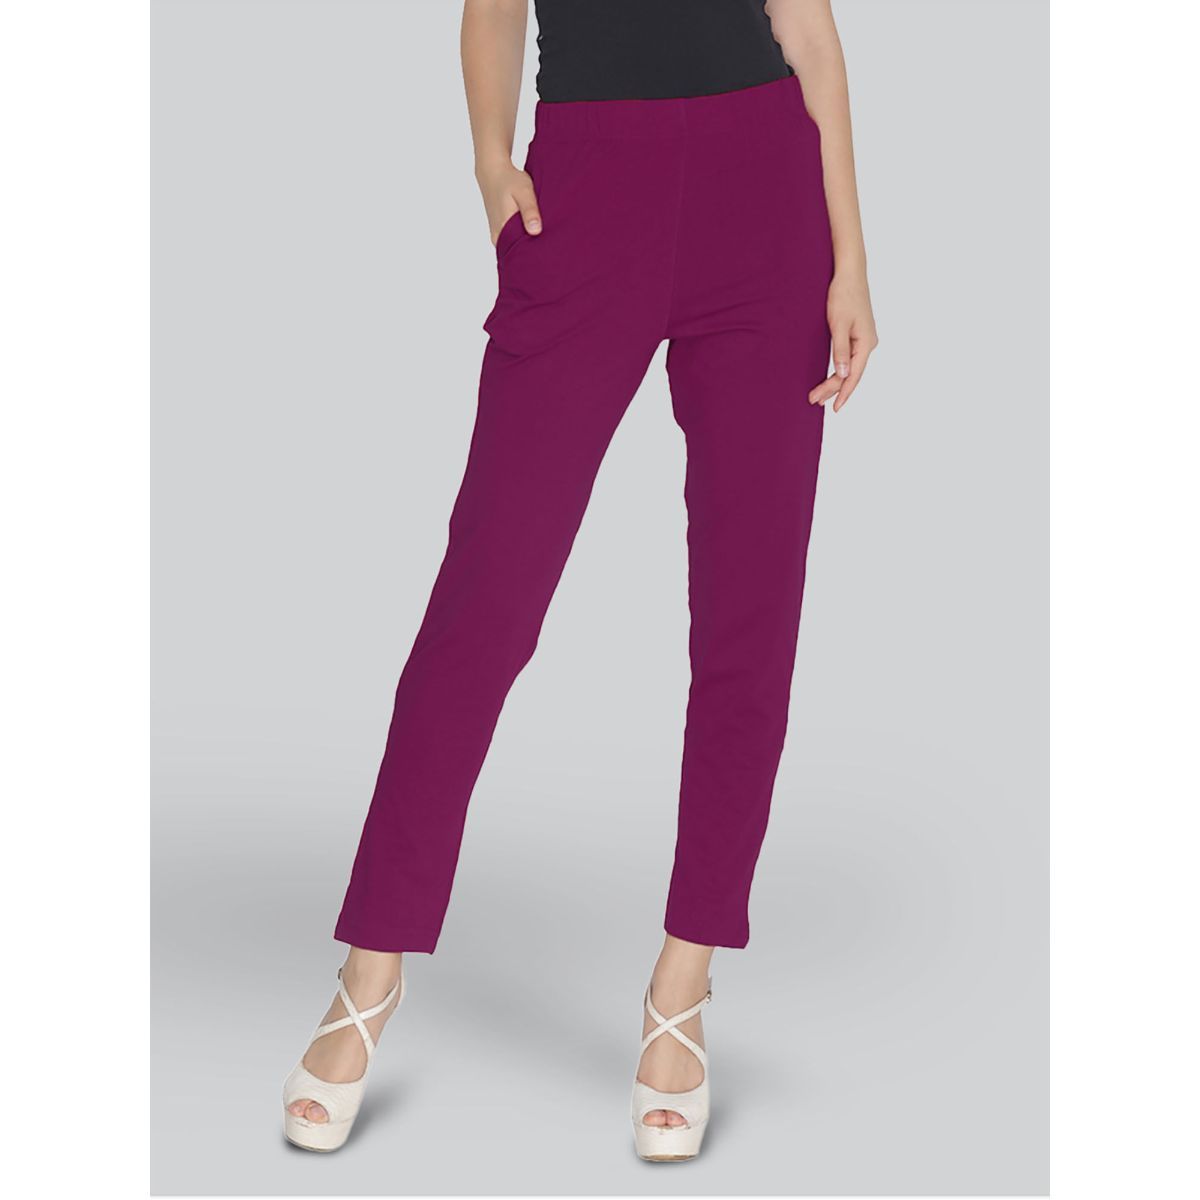 Amazon.com: Pants for Women High Waist Split Hem Pants (Color : Mauve Purple,  Size : X-Small) : Clothing, Shoes & Jewelry